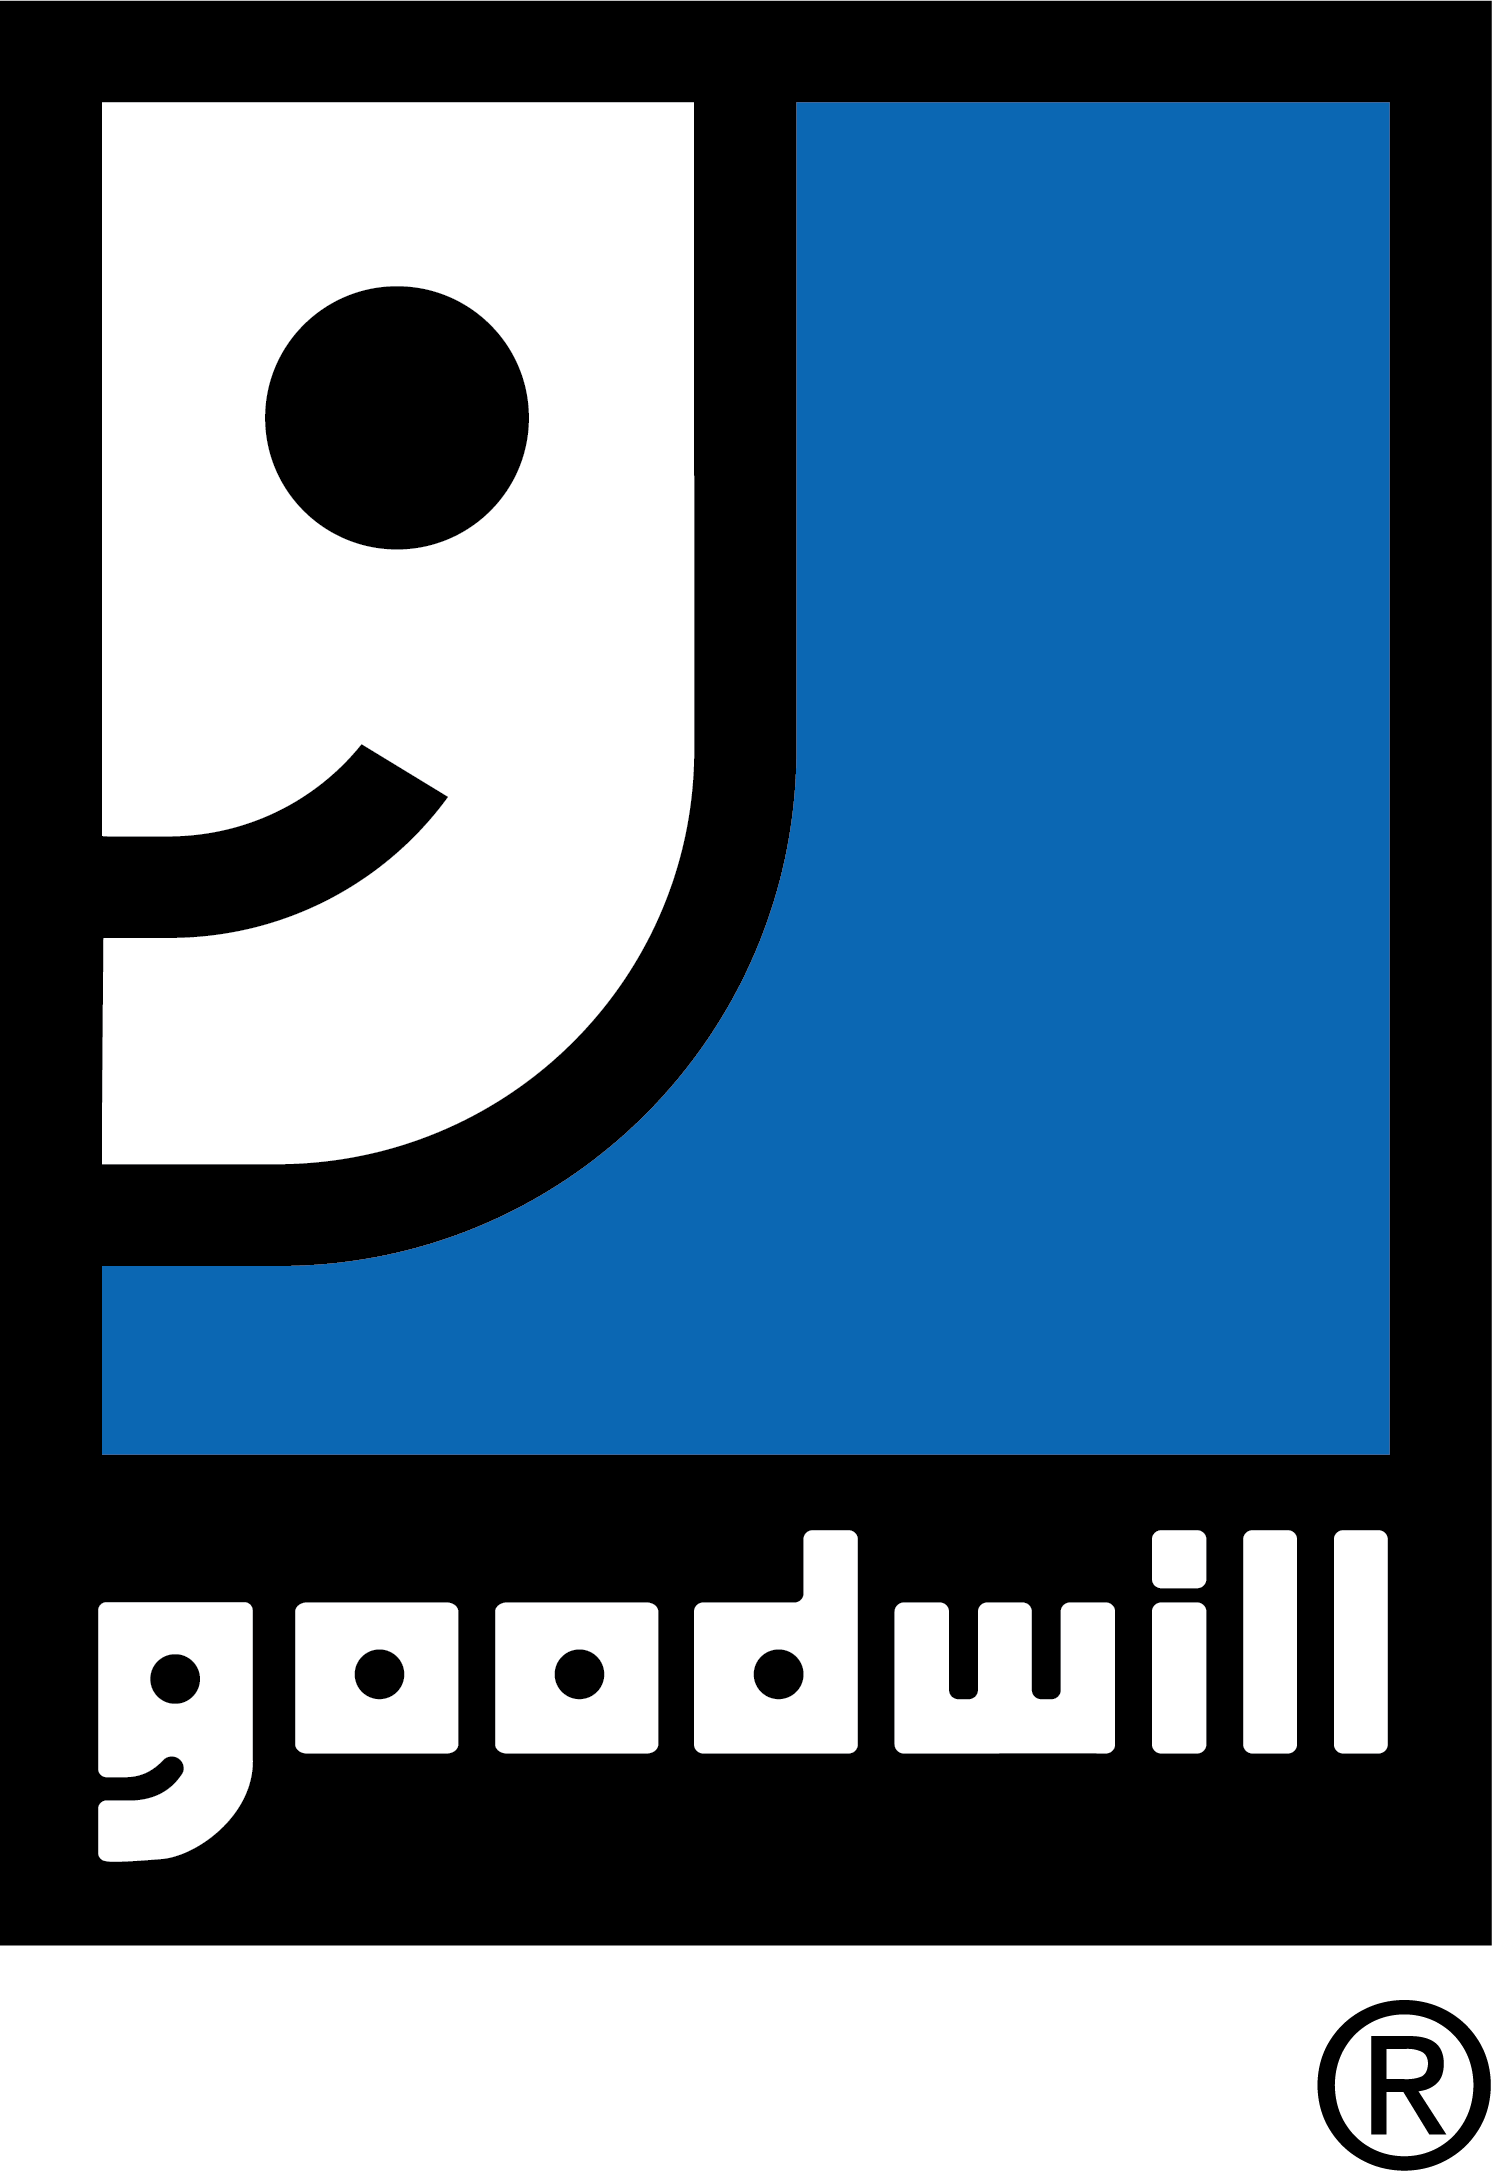 Goodwill Industries of Kentucky logo